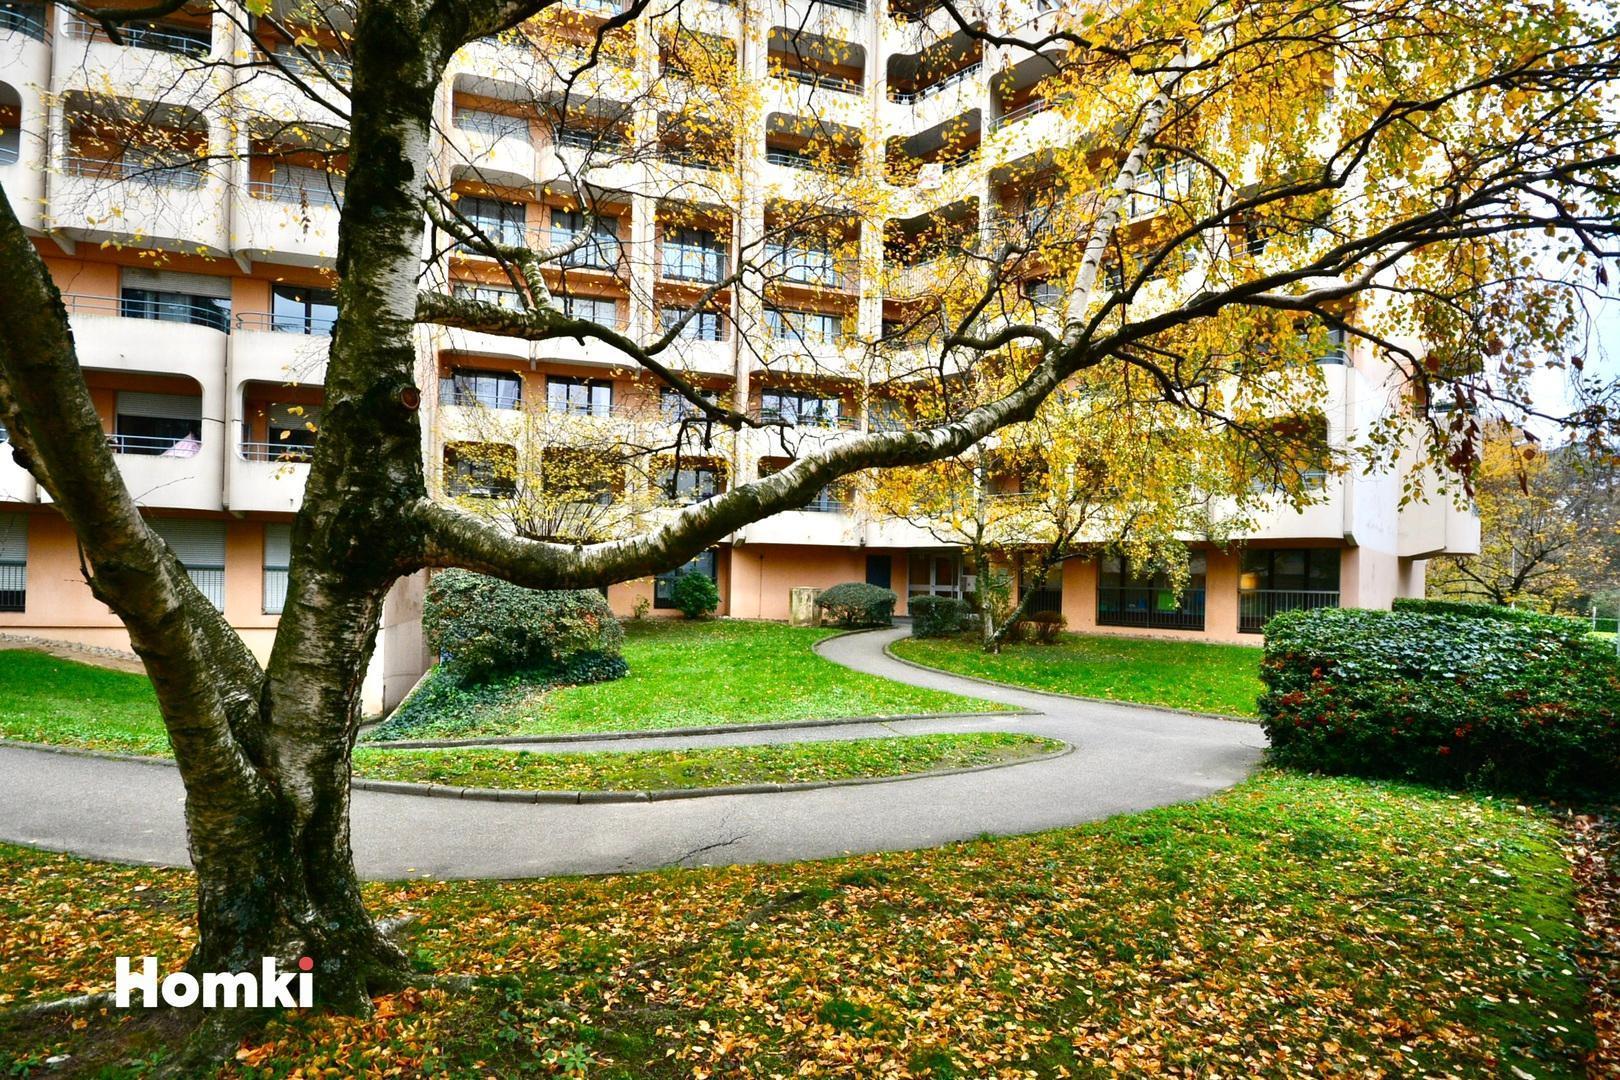 Homki - Vente Appartement  de 85.0 m² à Lyon 69009